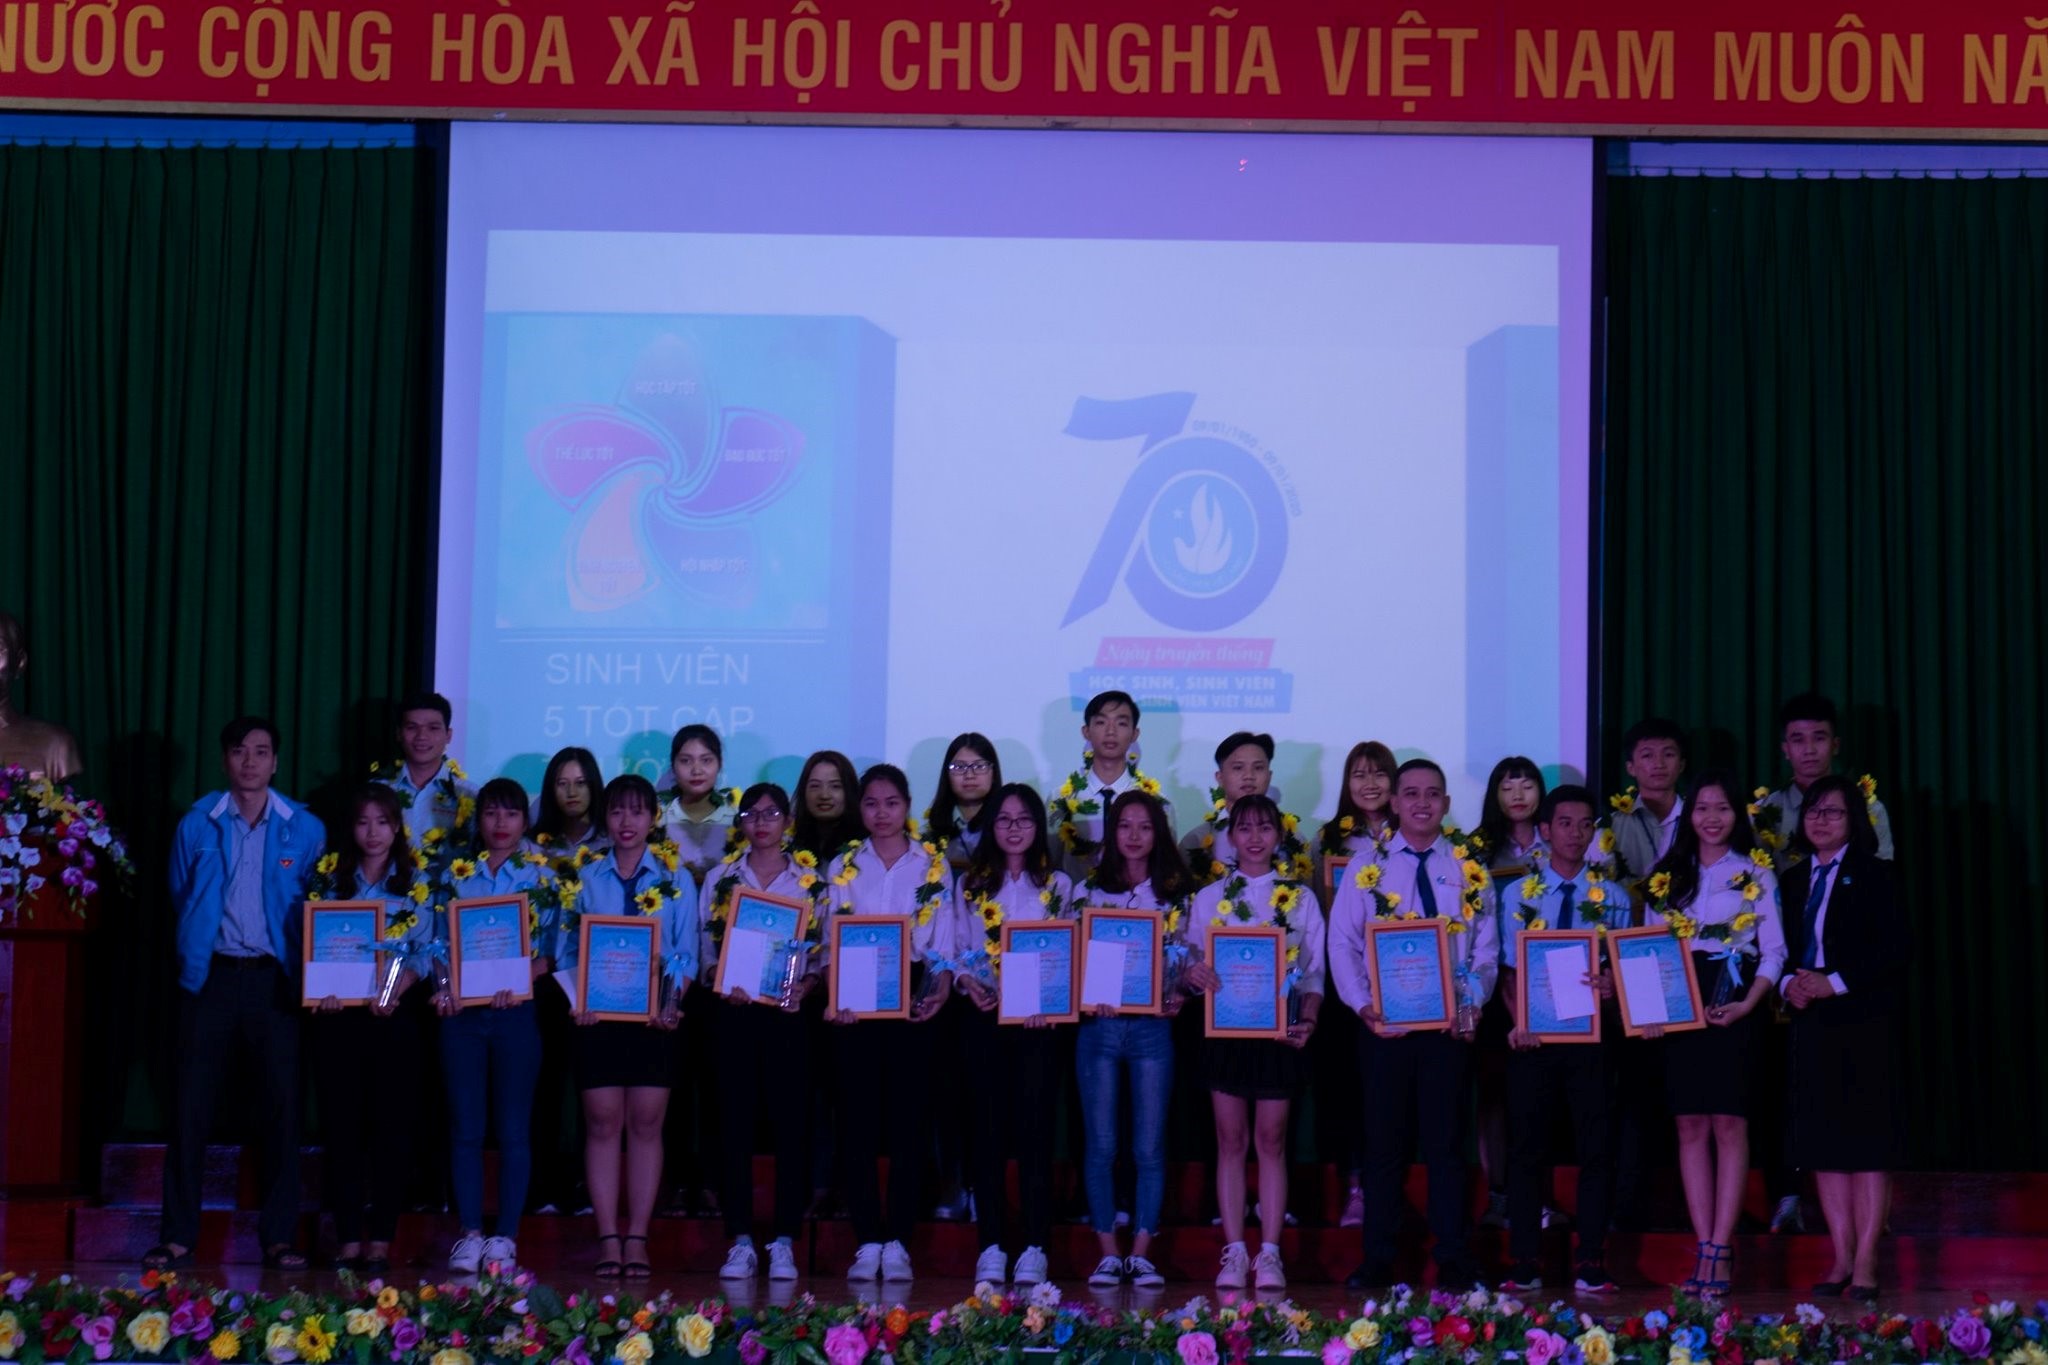 Chào mừng kỷ niệm 70 năm Ngày truyền thống học sinh, sinh viên và Hội Sinh viên Việt Nam (9-1-1950 - 9-1-2020)